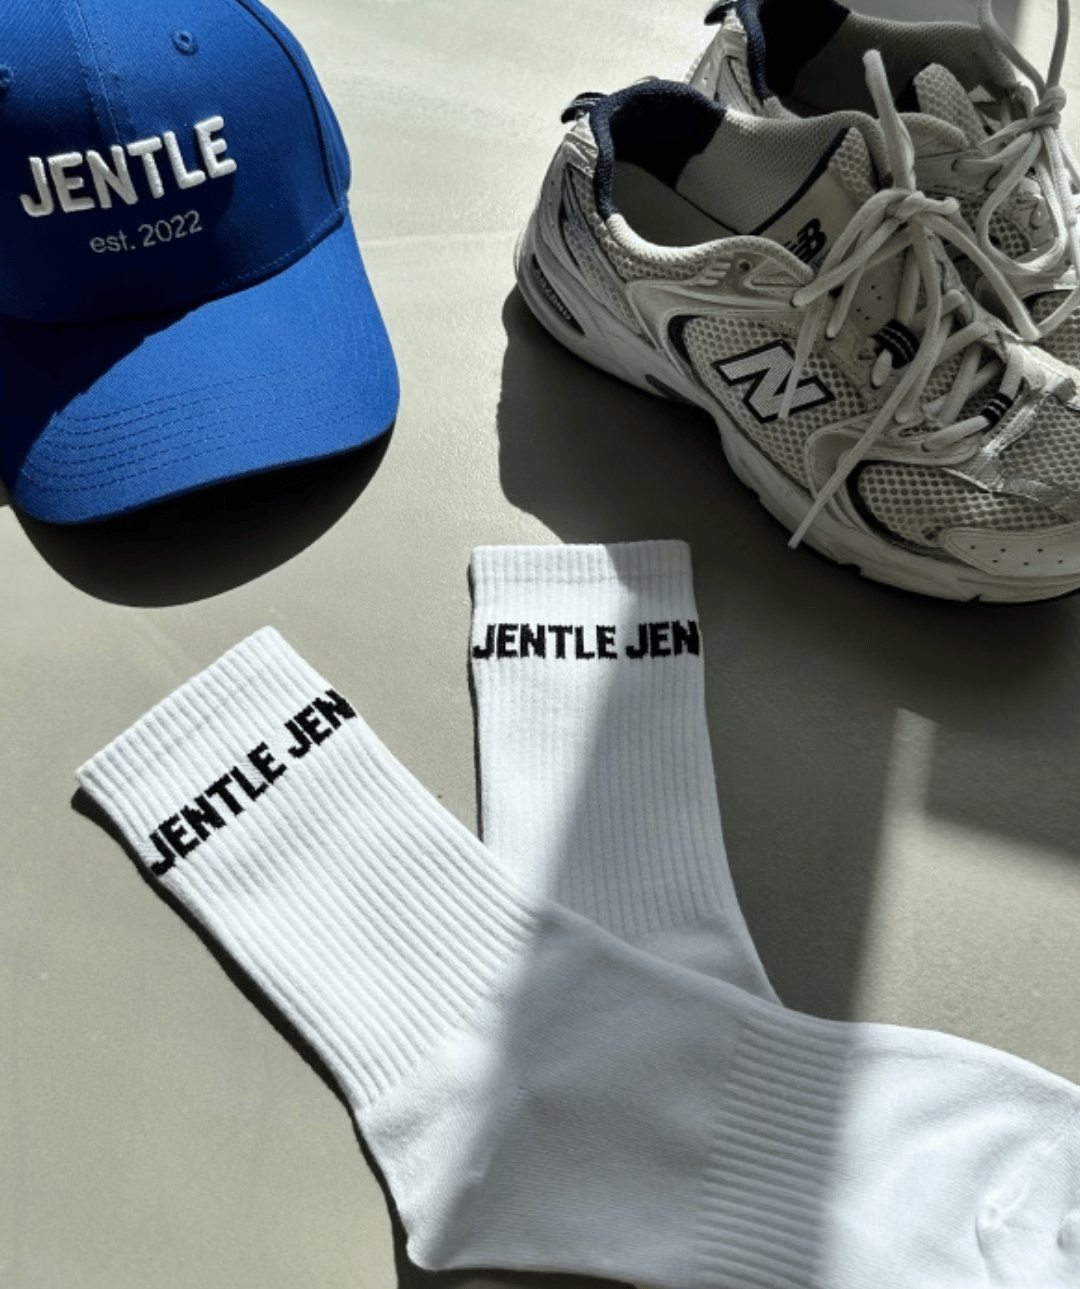 Jentle - Training Eda Socks (White)